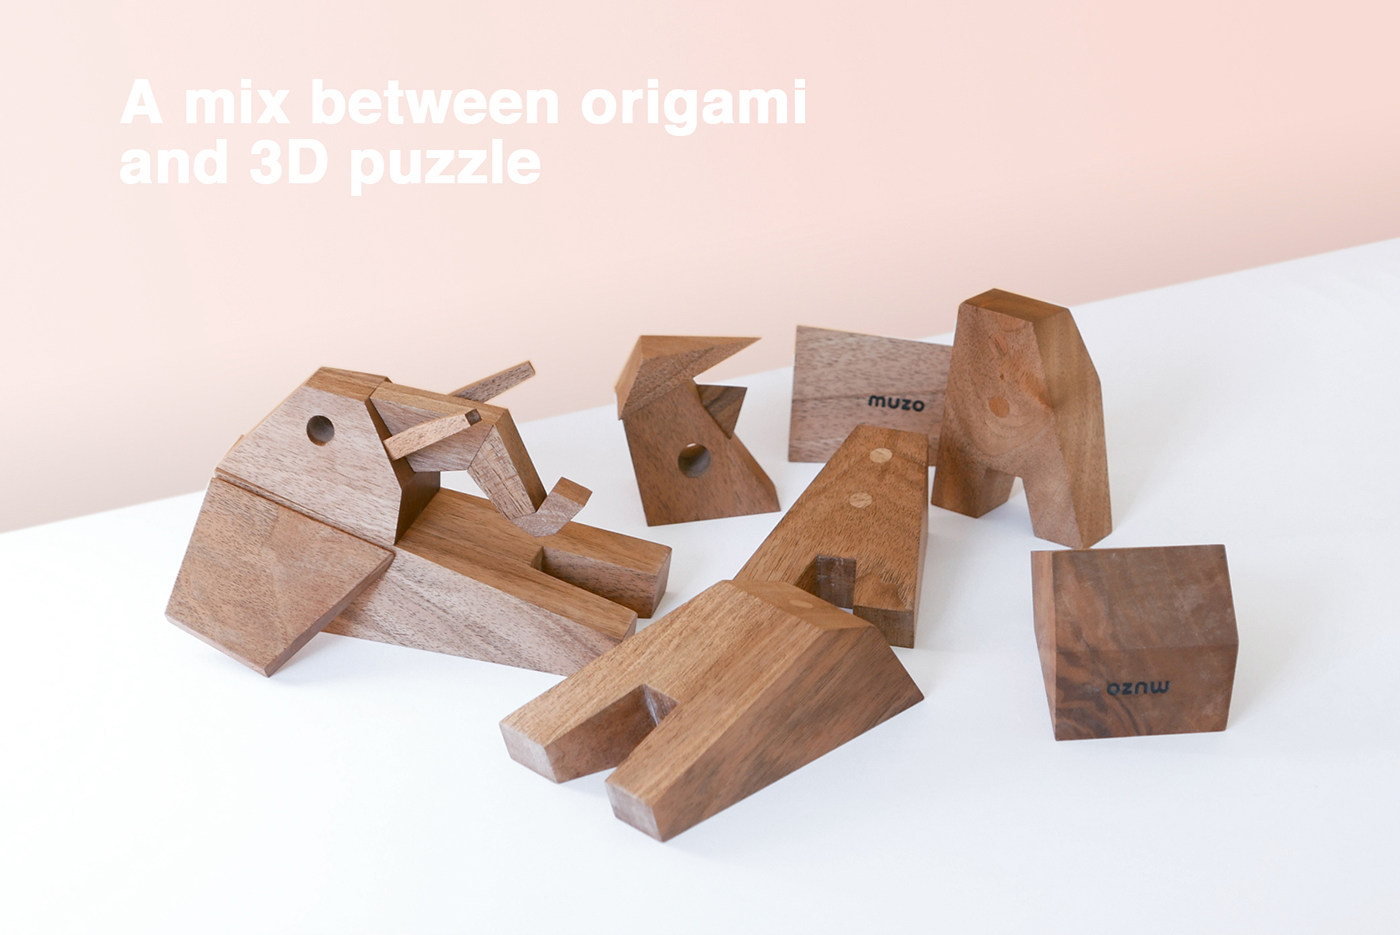 muzo muzodesign thibautmalet muzo design design woodwork WOODTOY   toy figurine woodentoy